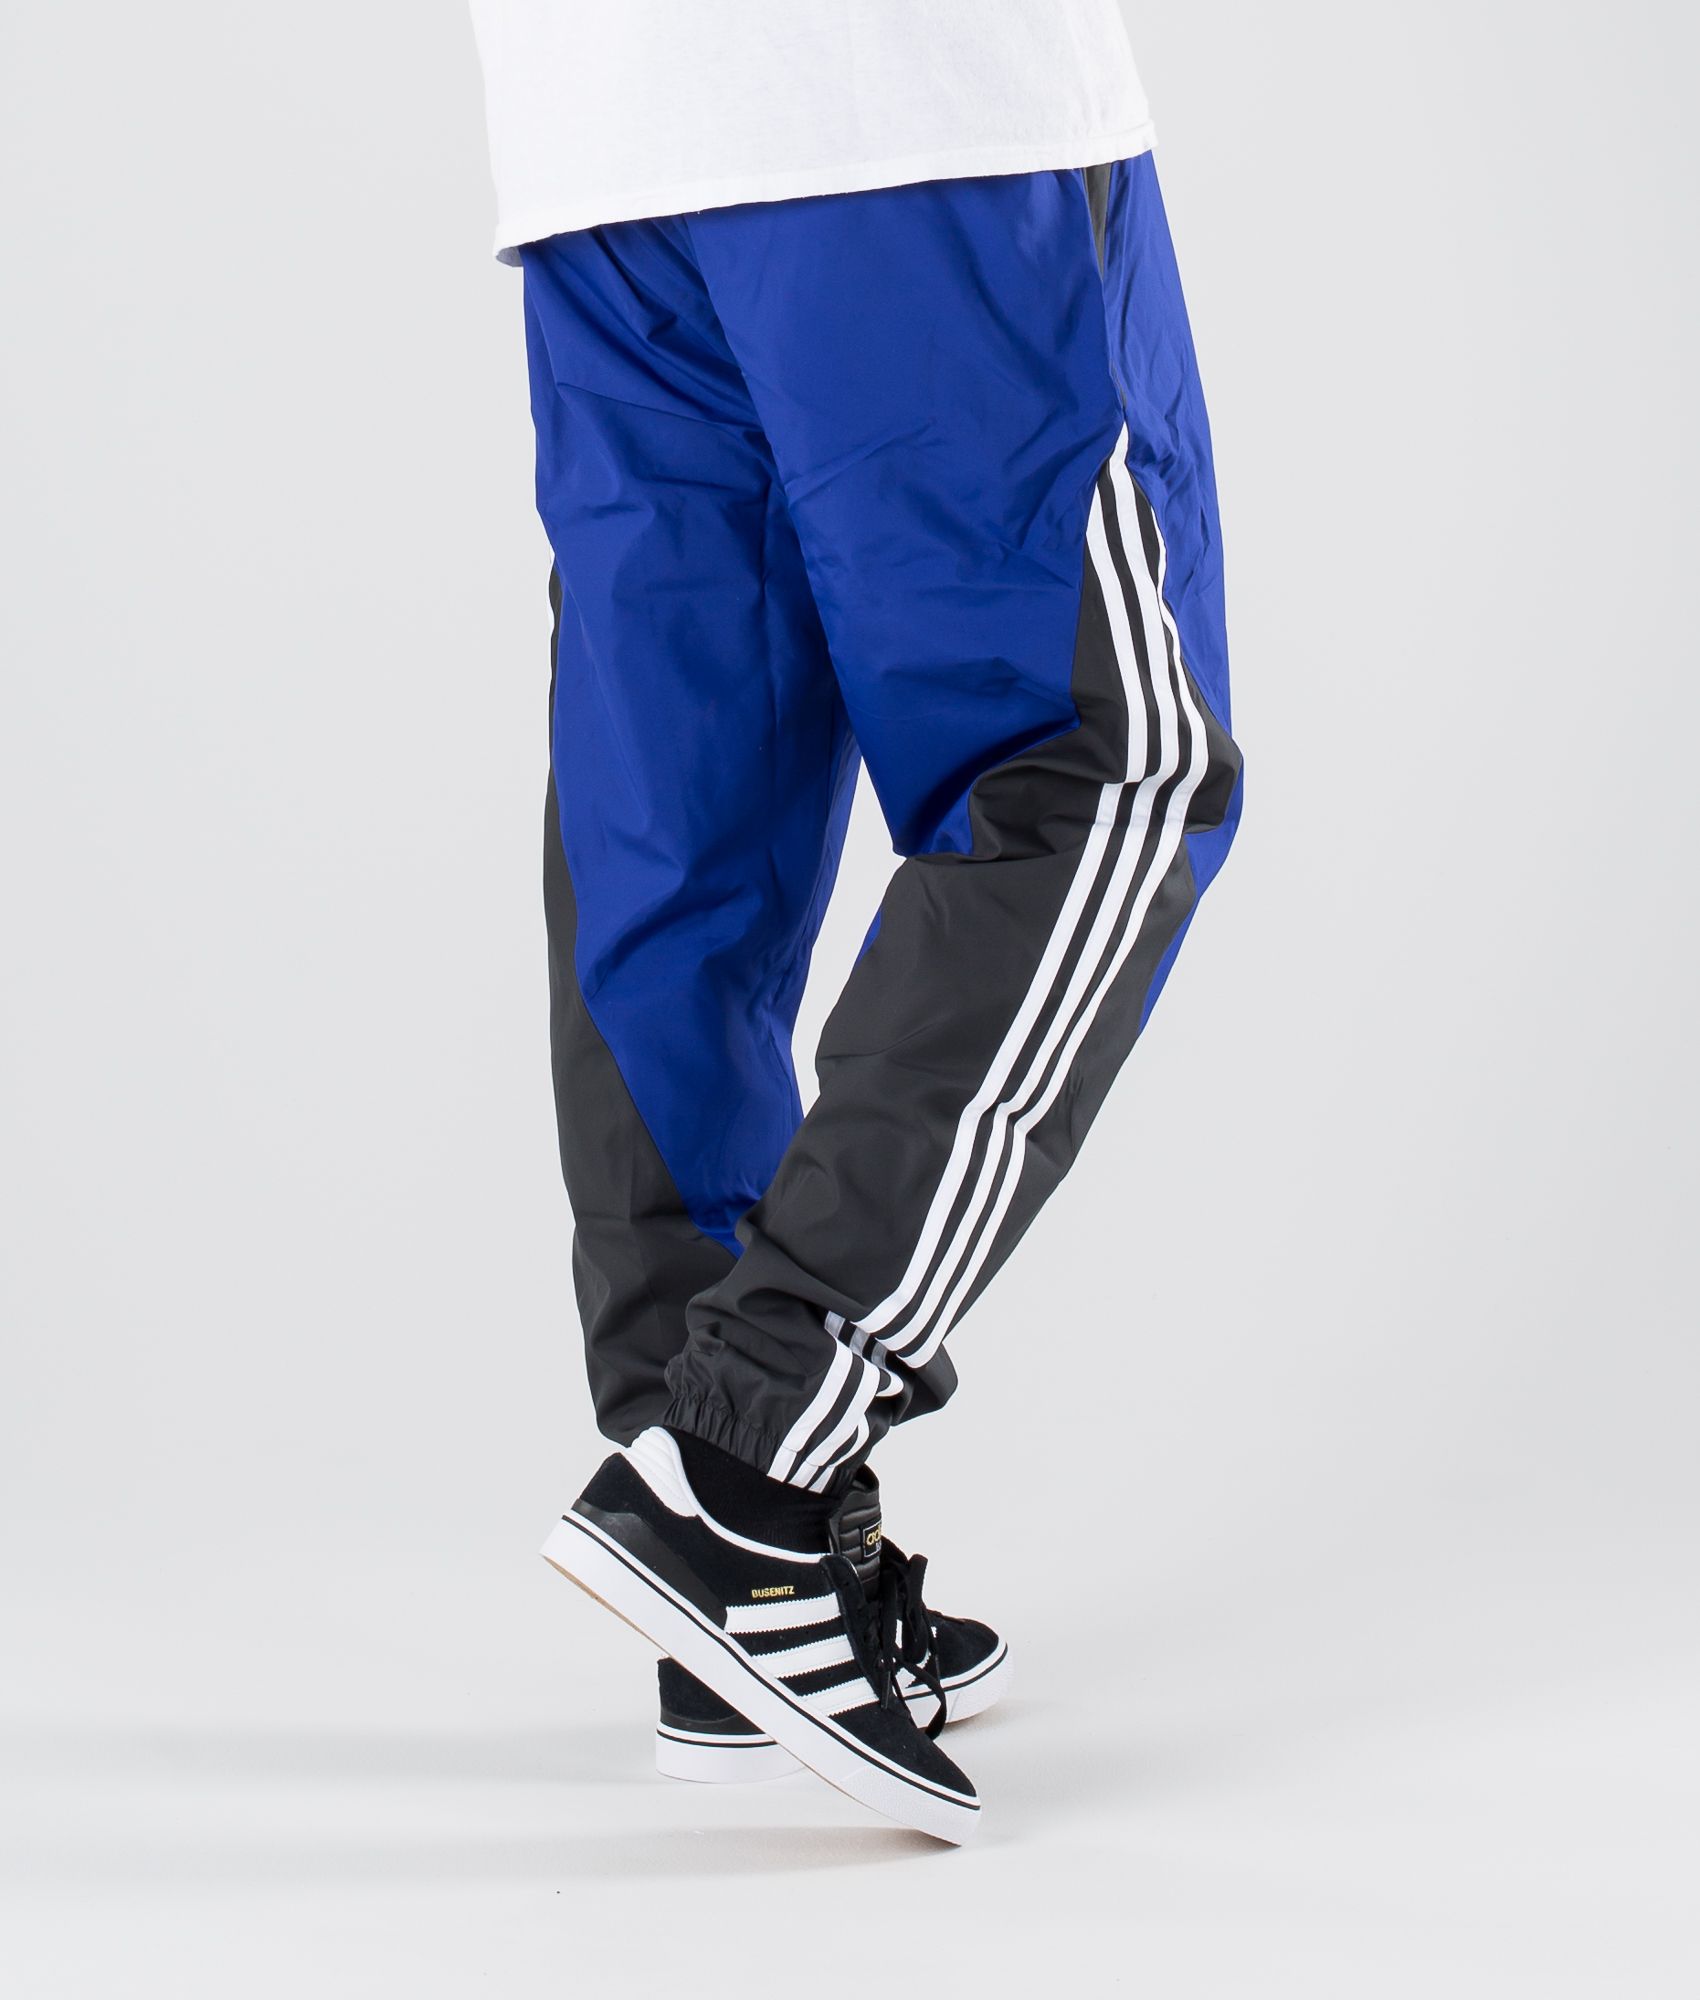 Adidas Pants Xl Size Chart